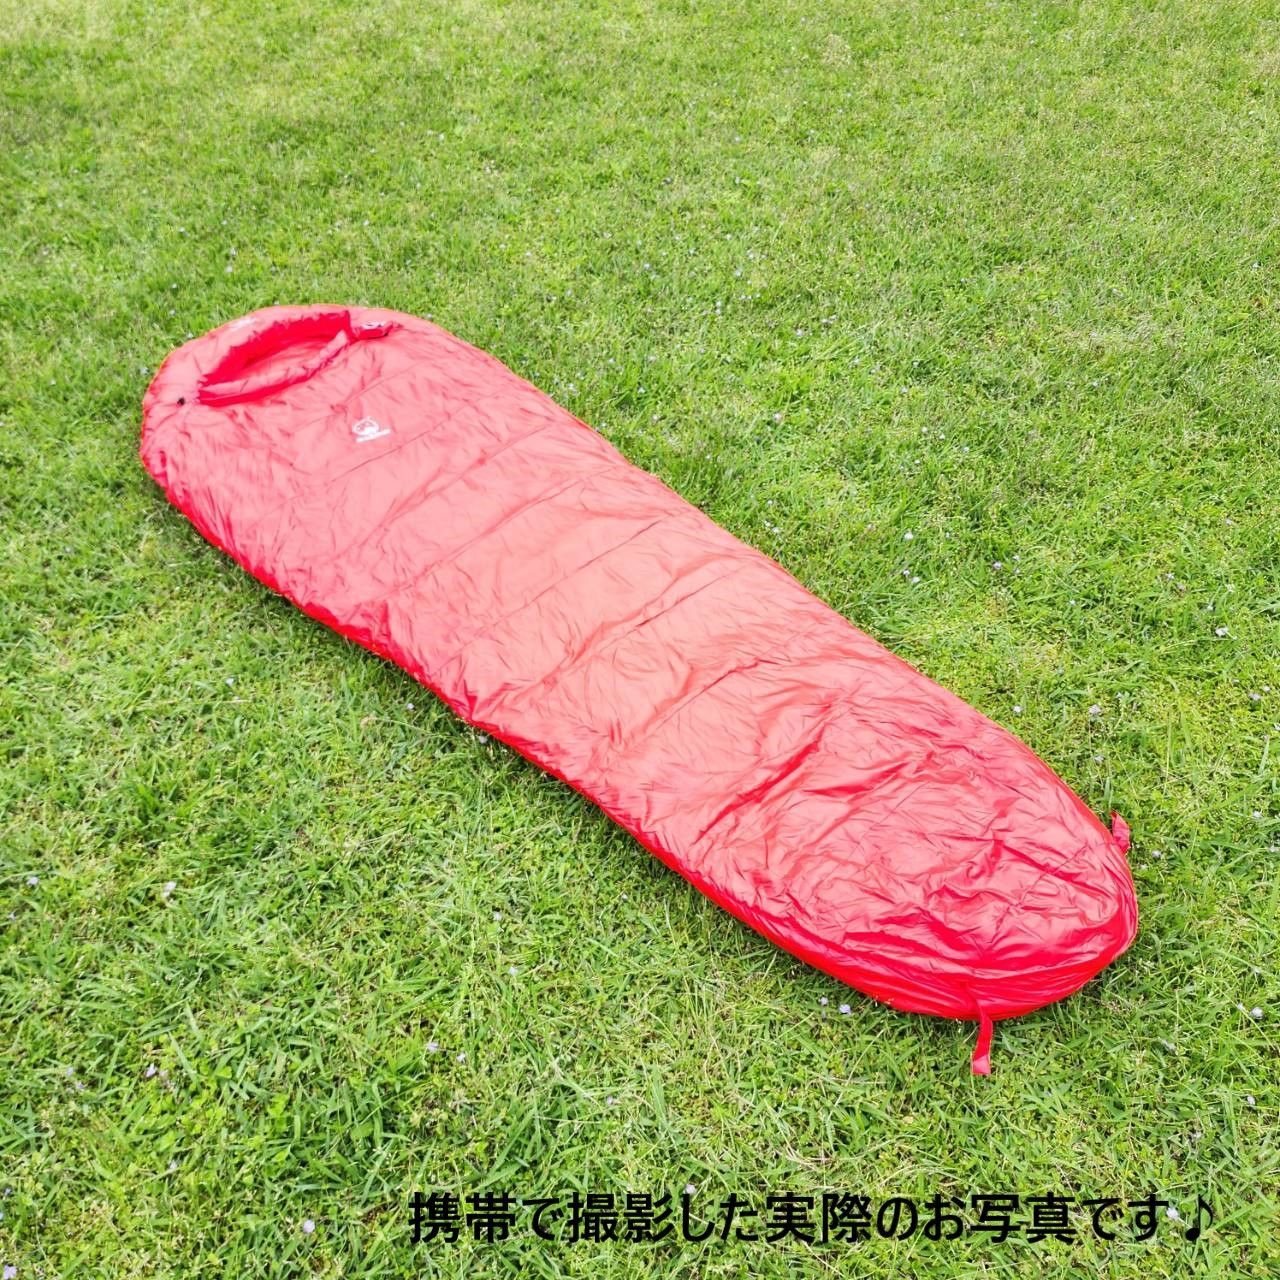 アウトドア 防水 グース ダウン マミー型 寝袋 シュラフ レッド